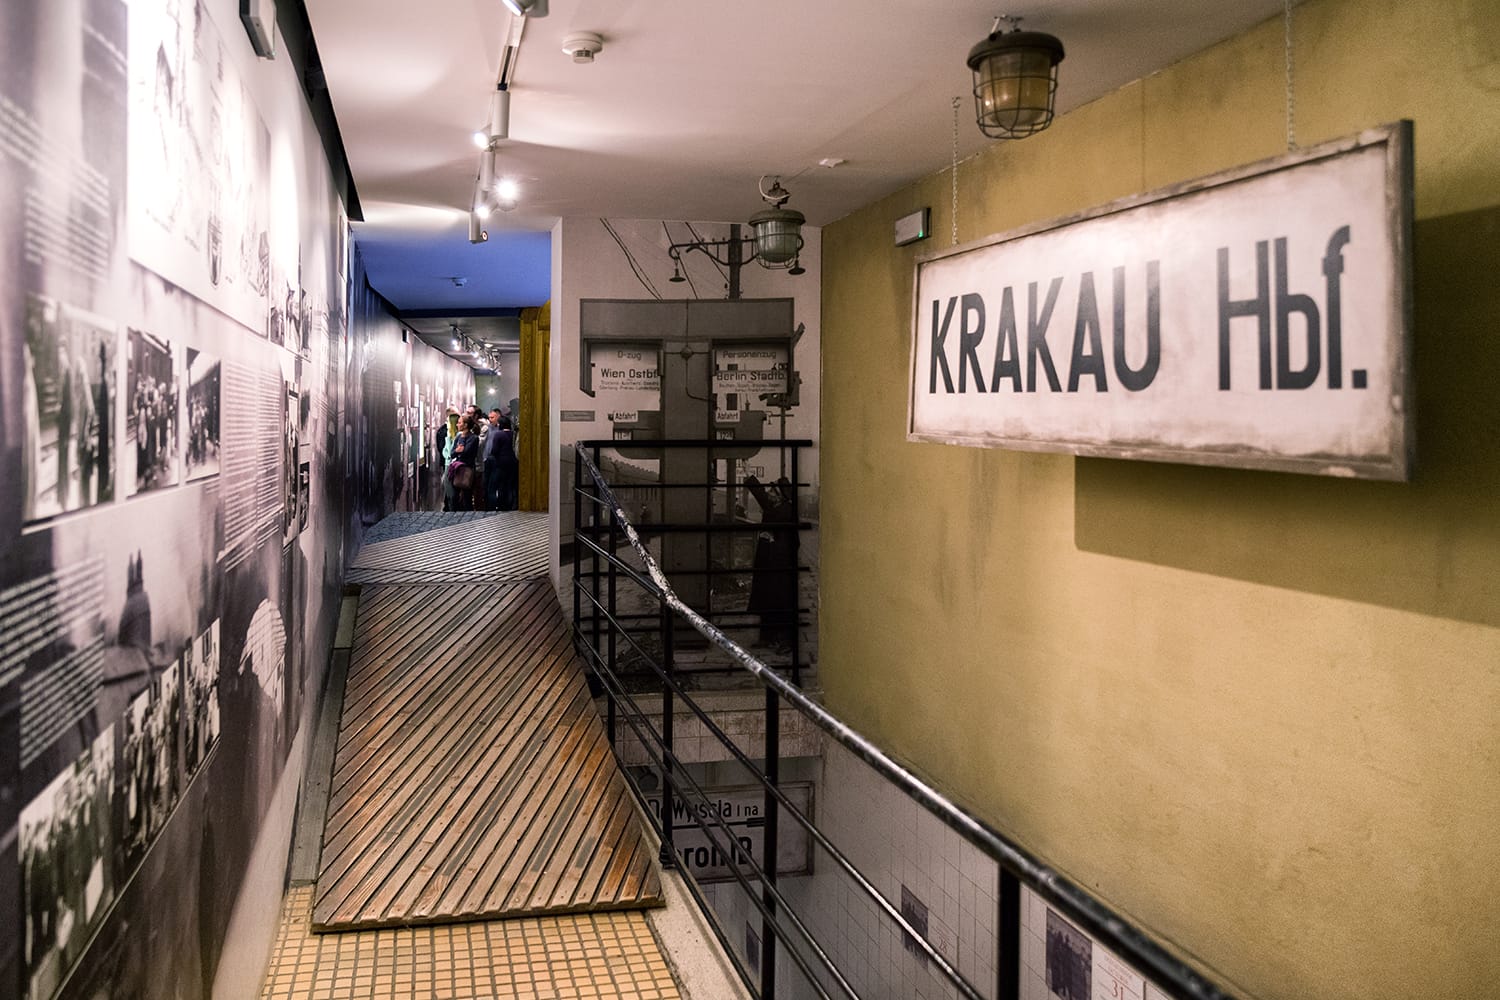  Oskar Schindler's Enamel factory museum in Krakow, Poland